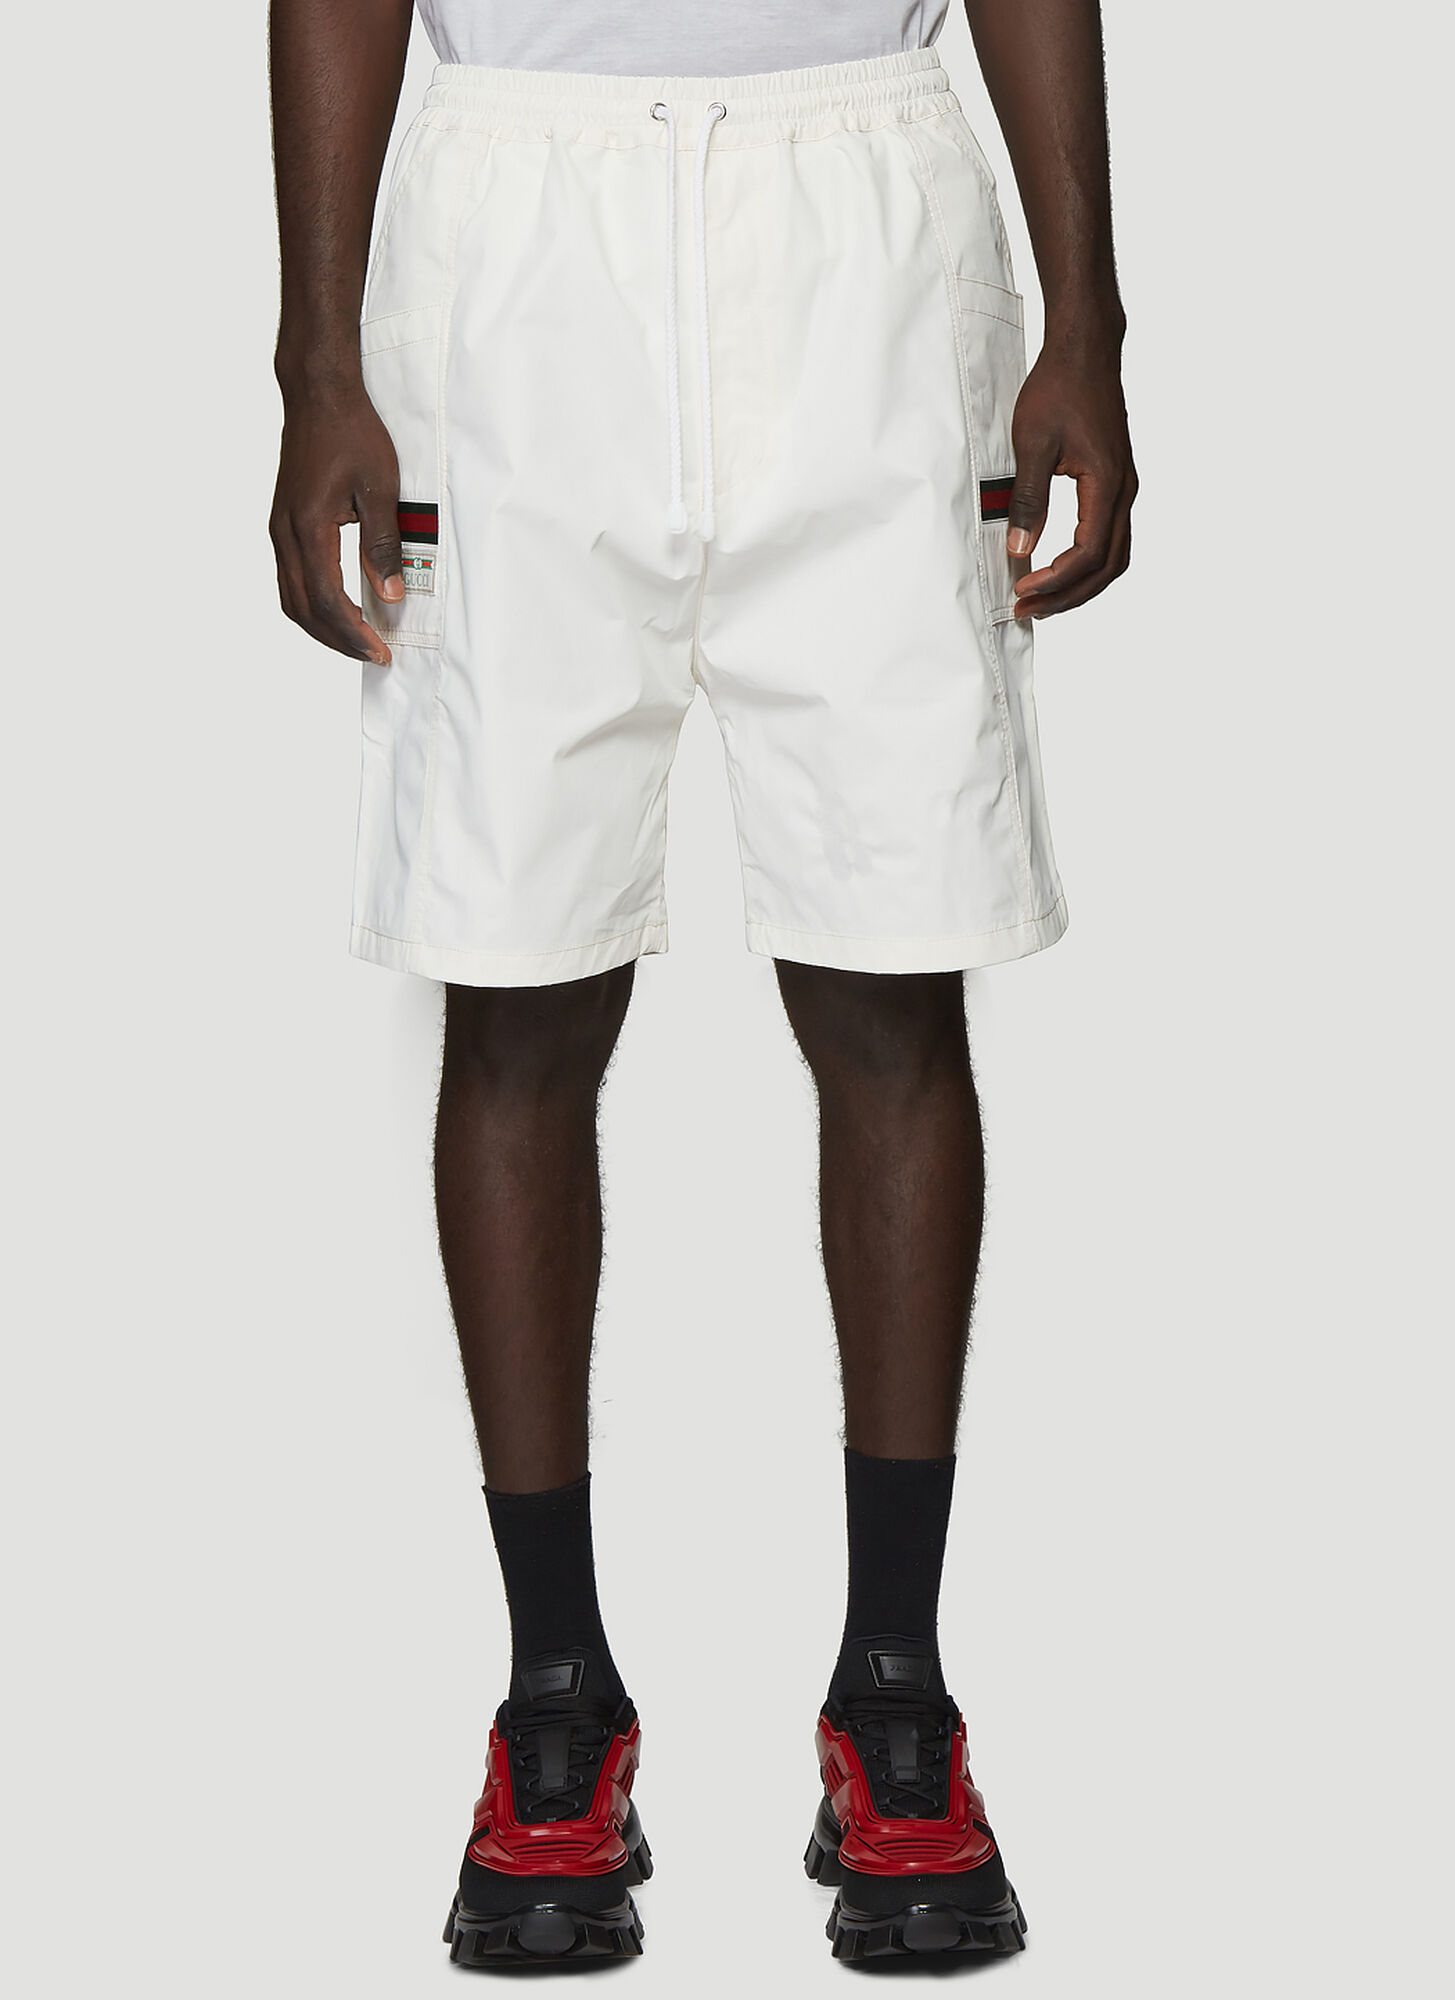 Gucci Web Trim Shorts in White size IT – 52 | The Fashionisto